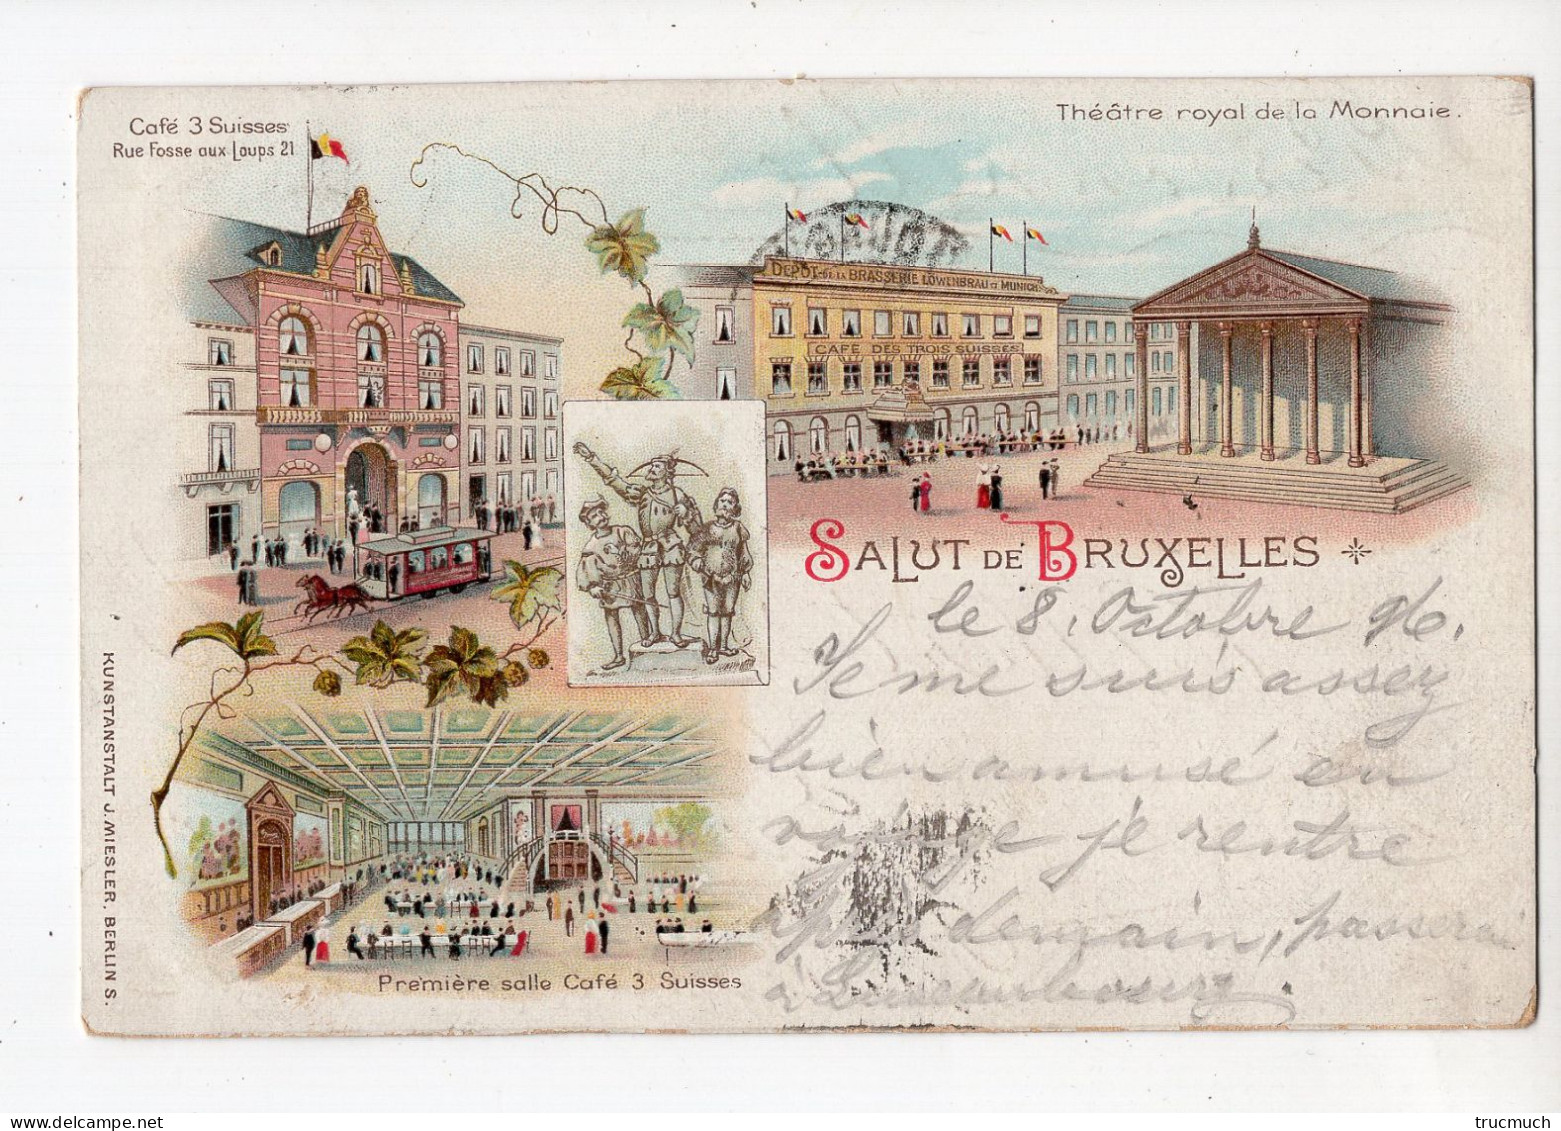 463 - Salut De BRUXELLES - Théâtre Royal De La Monnaie - Café 3 Suisses *litho*1896* - Monumentos, Edificios